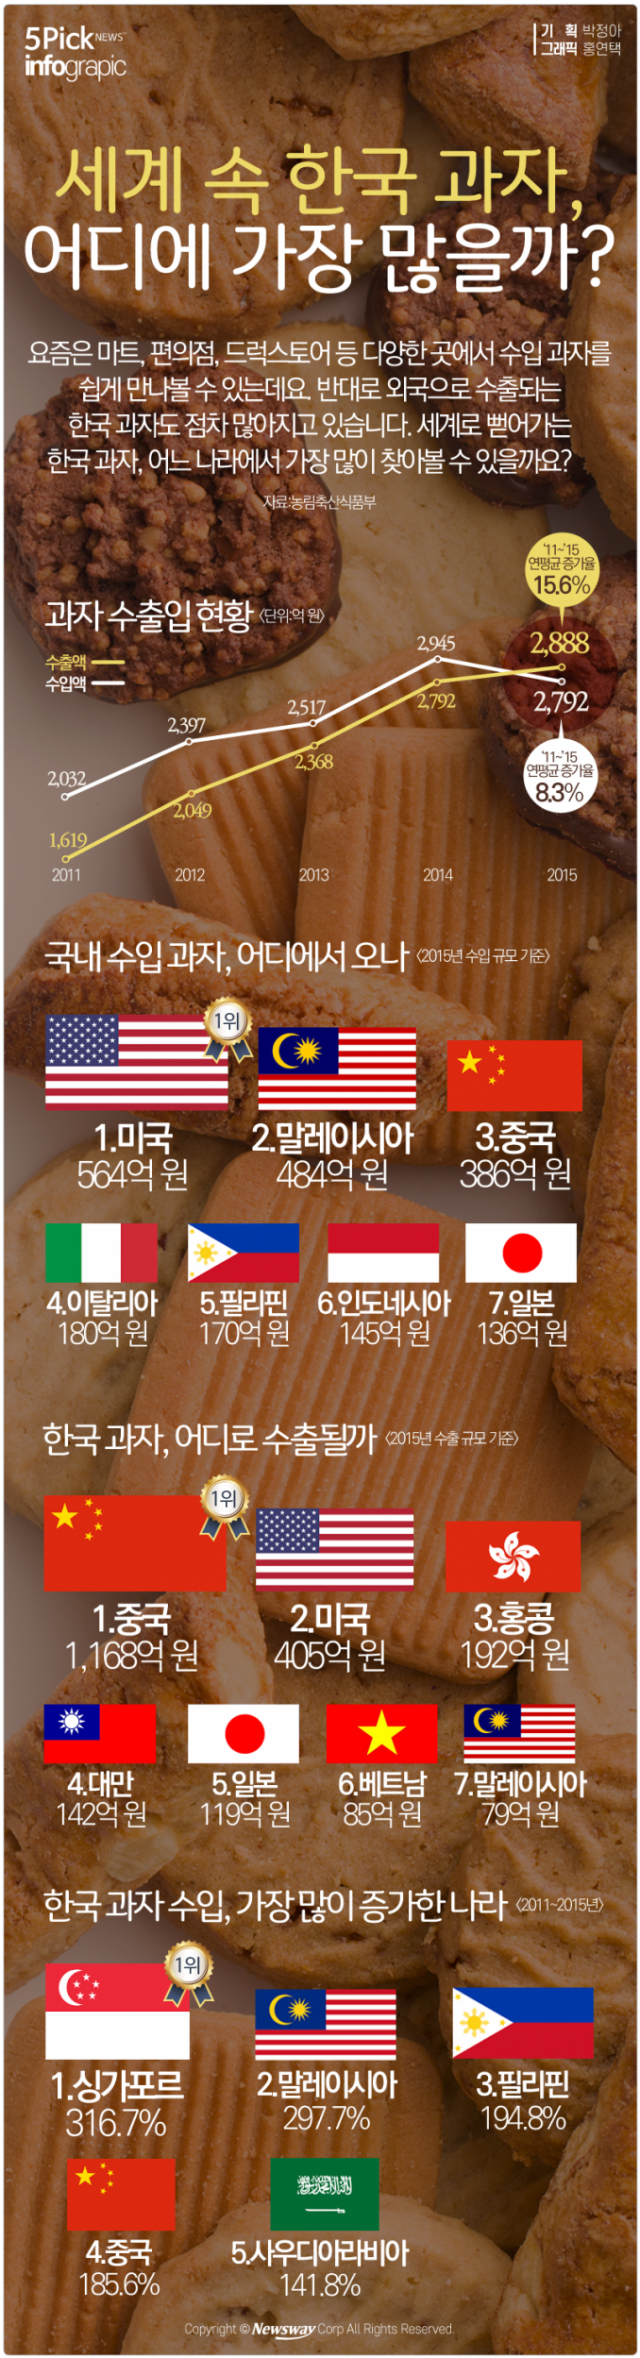  세계 속 한국 과자, 어디에 가장 많을까 기사의 사진